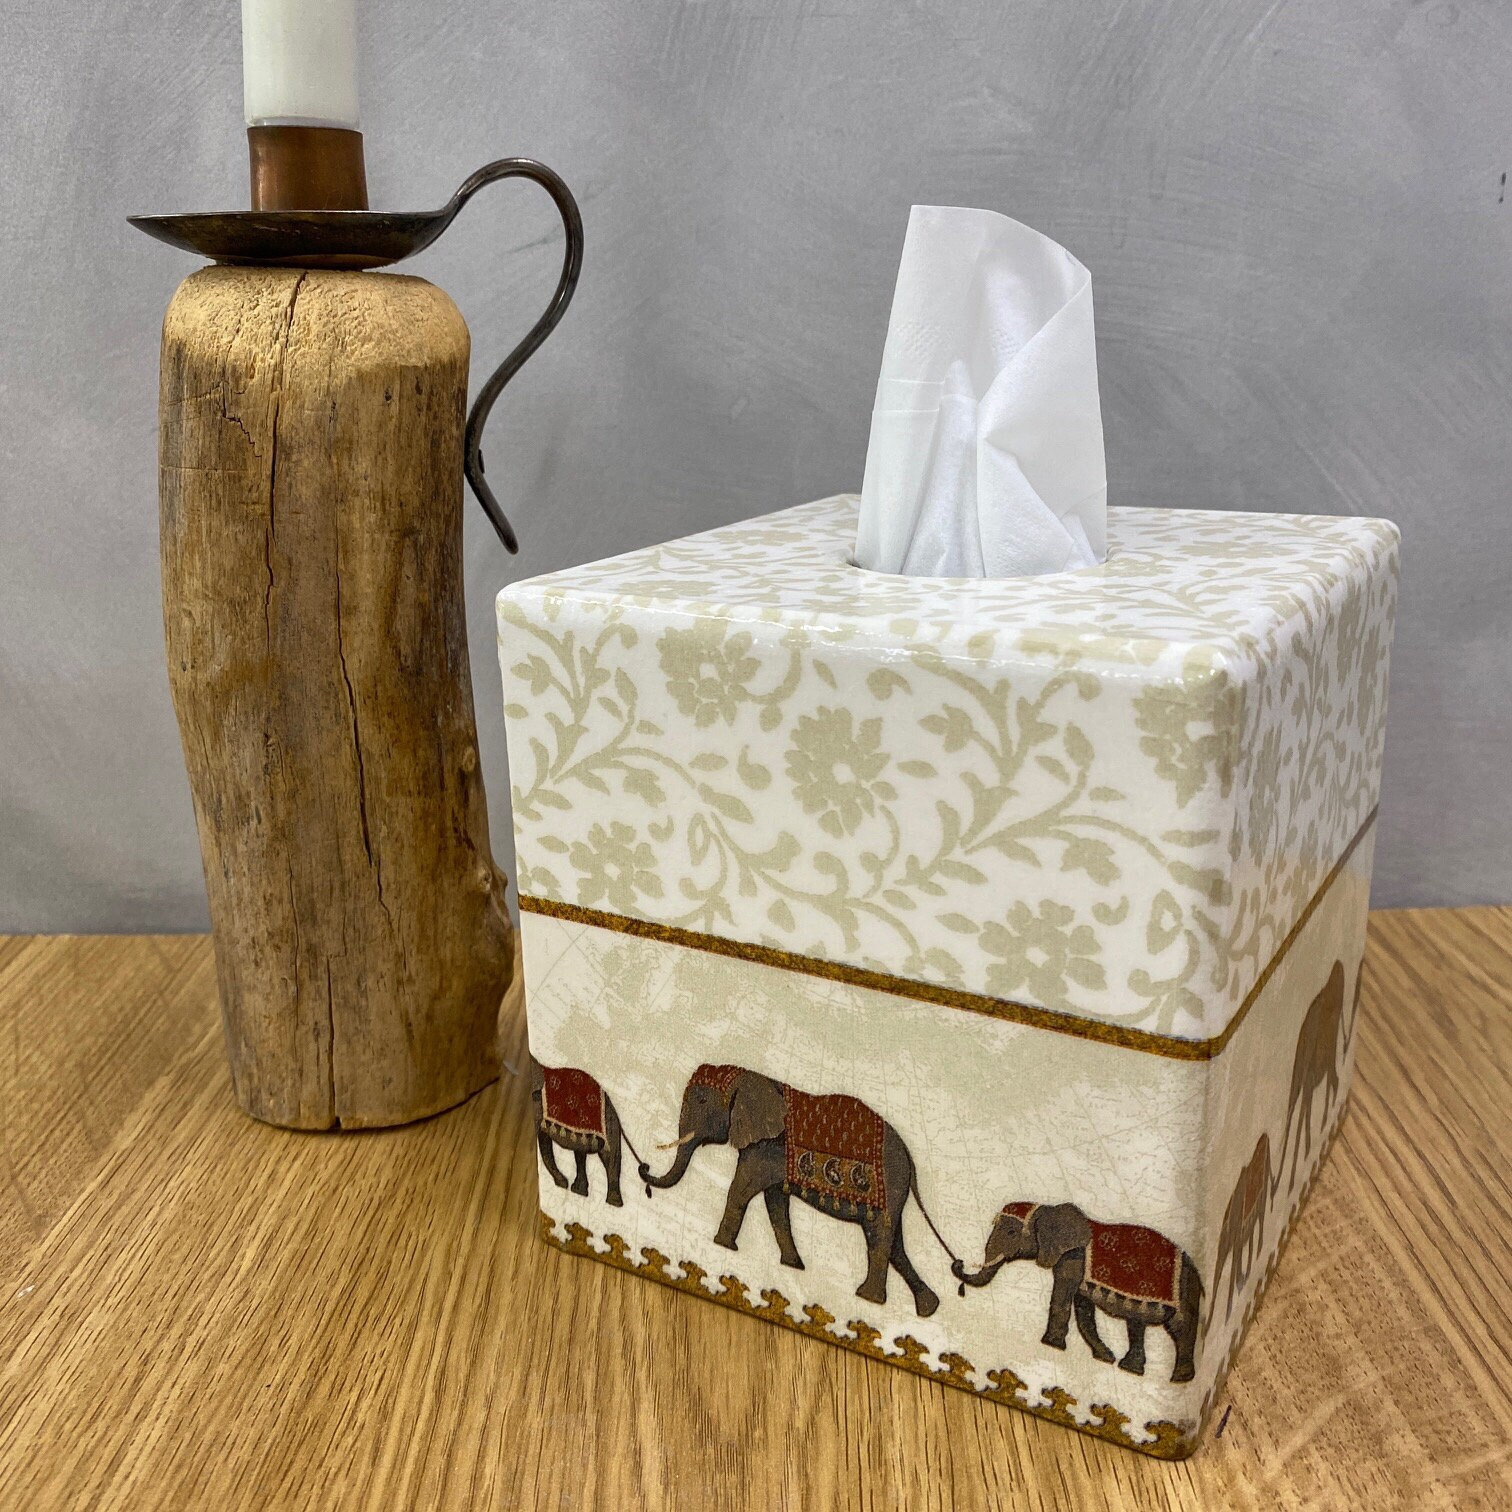 WCN Decorate Tissue Box Elephant Tissue Box Holder Facial Tissue Holder  Dispenser Tissue Cover Tissues Dispenser for Bathroom Kitchen Bedroom  Tissue